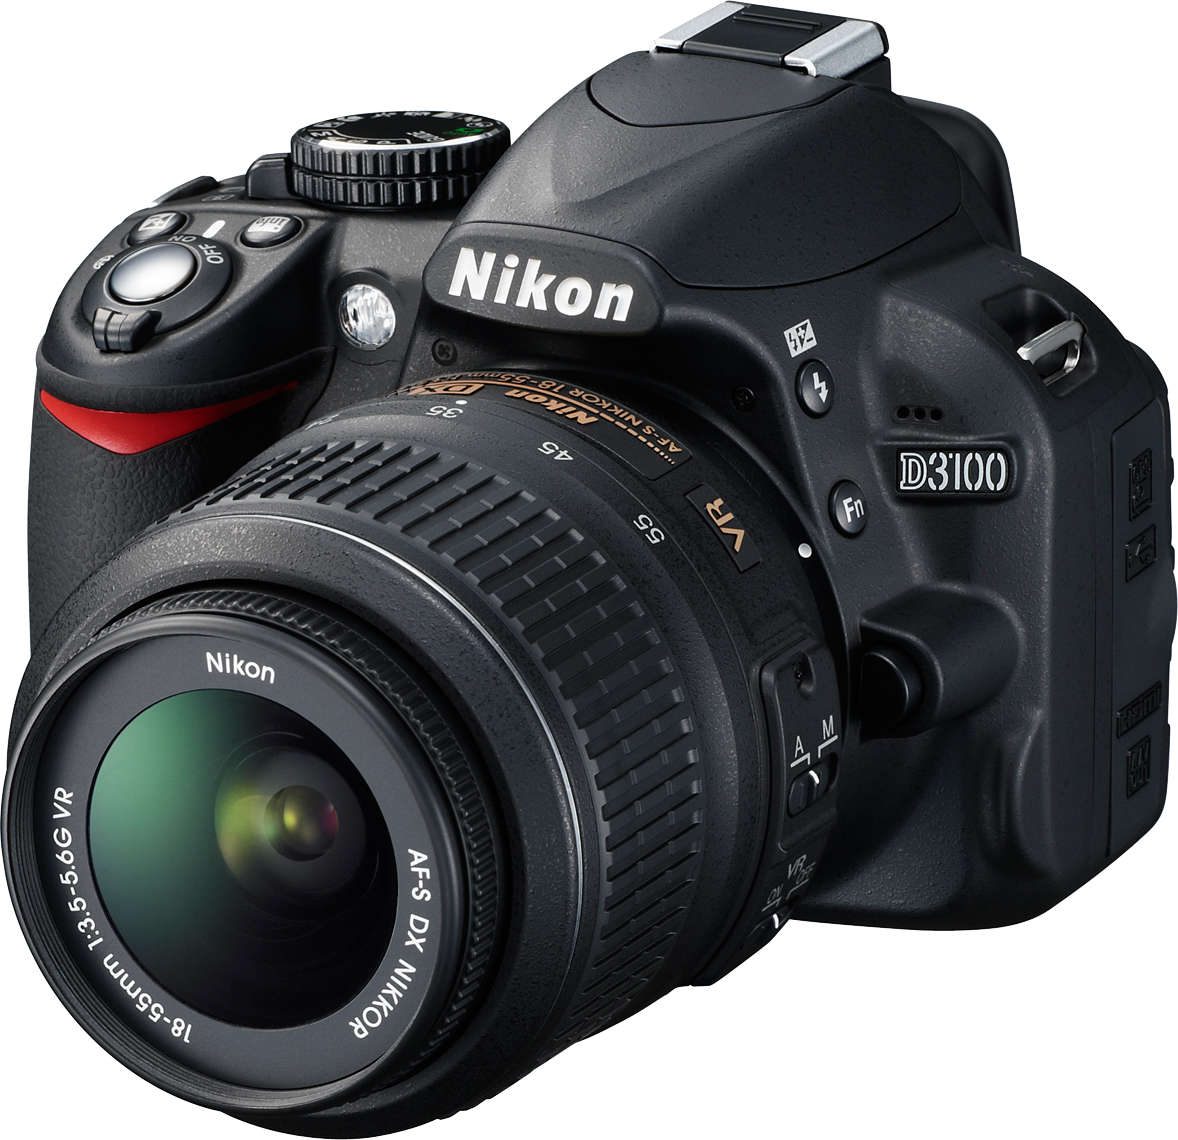 Nikon Camera PNG Image